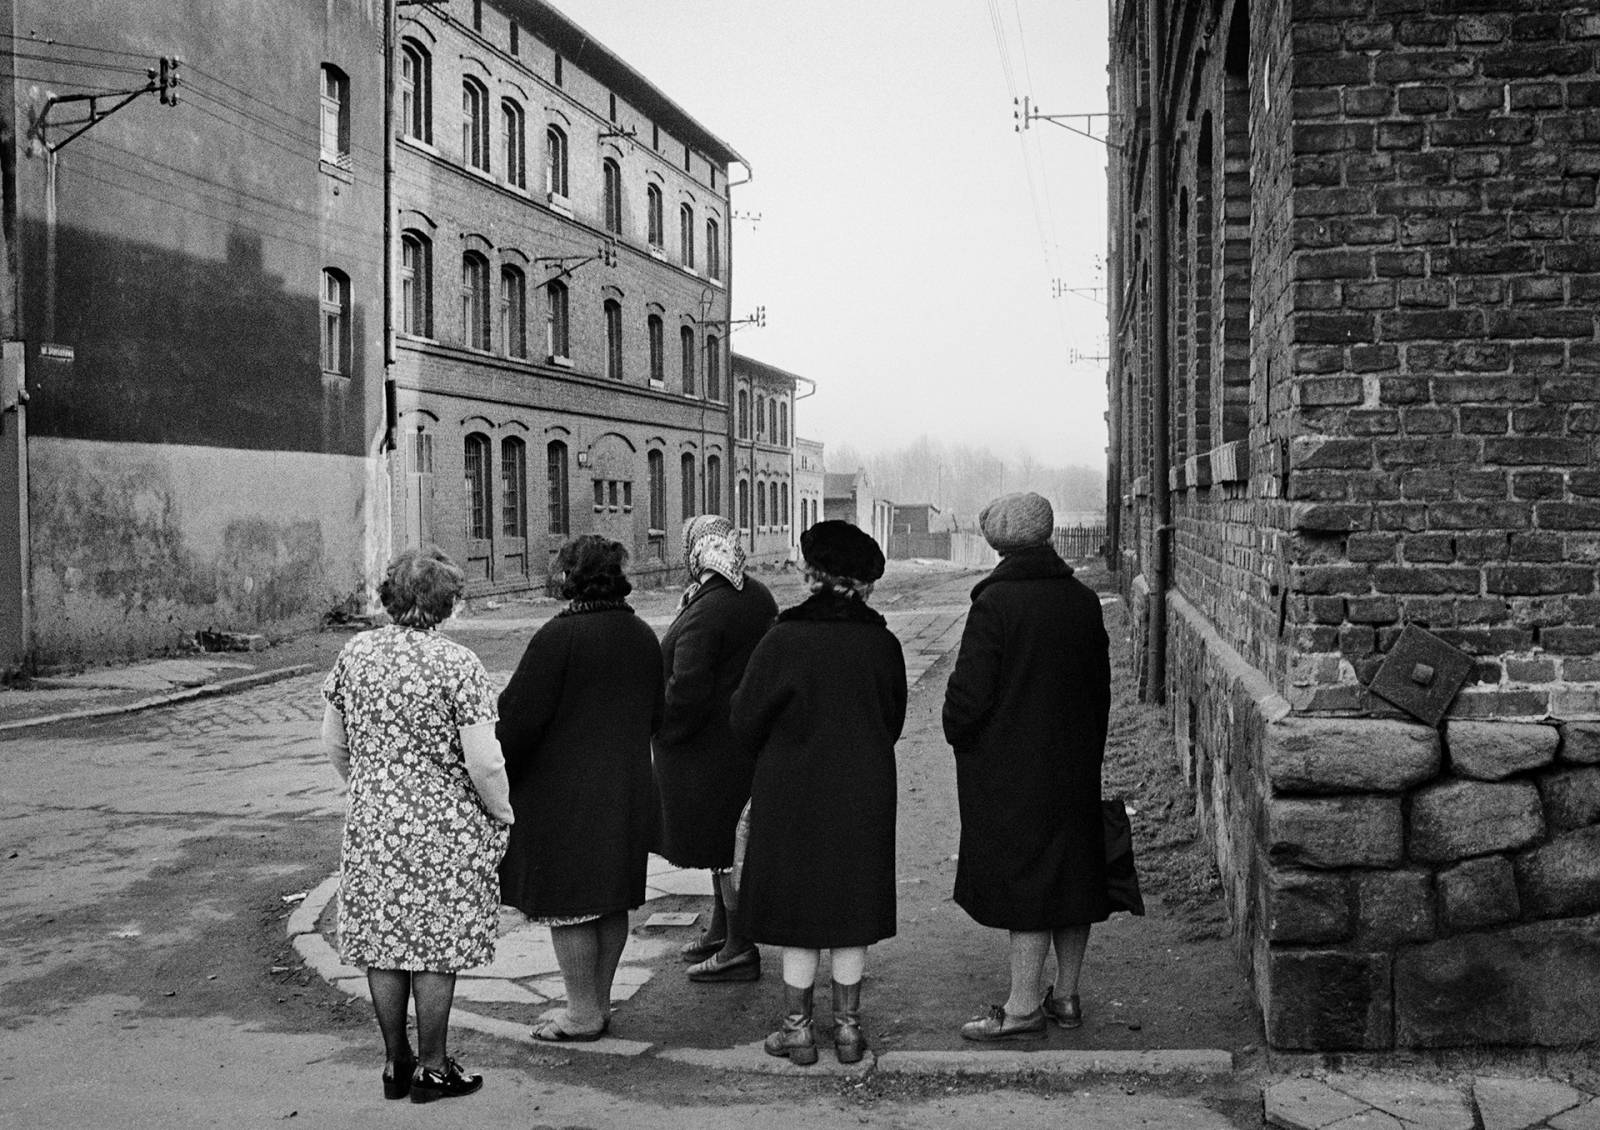 Joanna Helander, Ladies Looking: Photographs 1976–2012